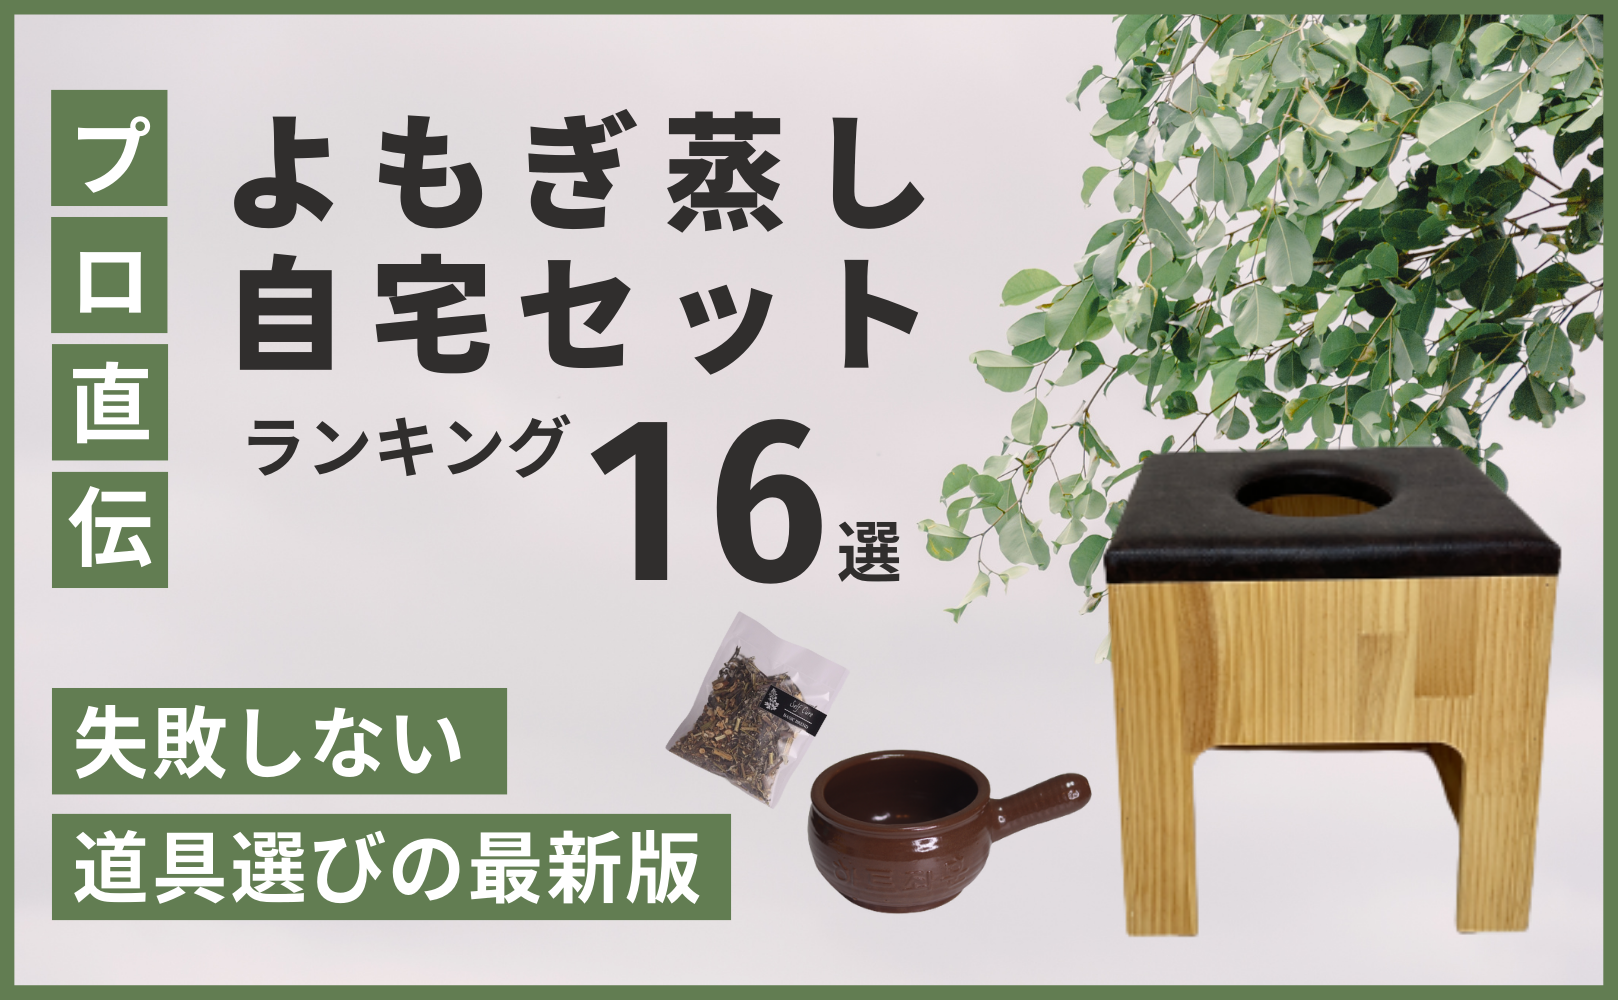 よもぎ蒸しセット - 沖縄県の生活雑貨